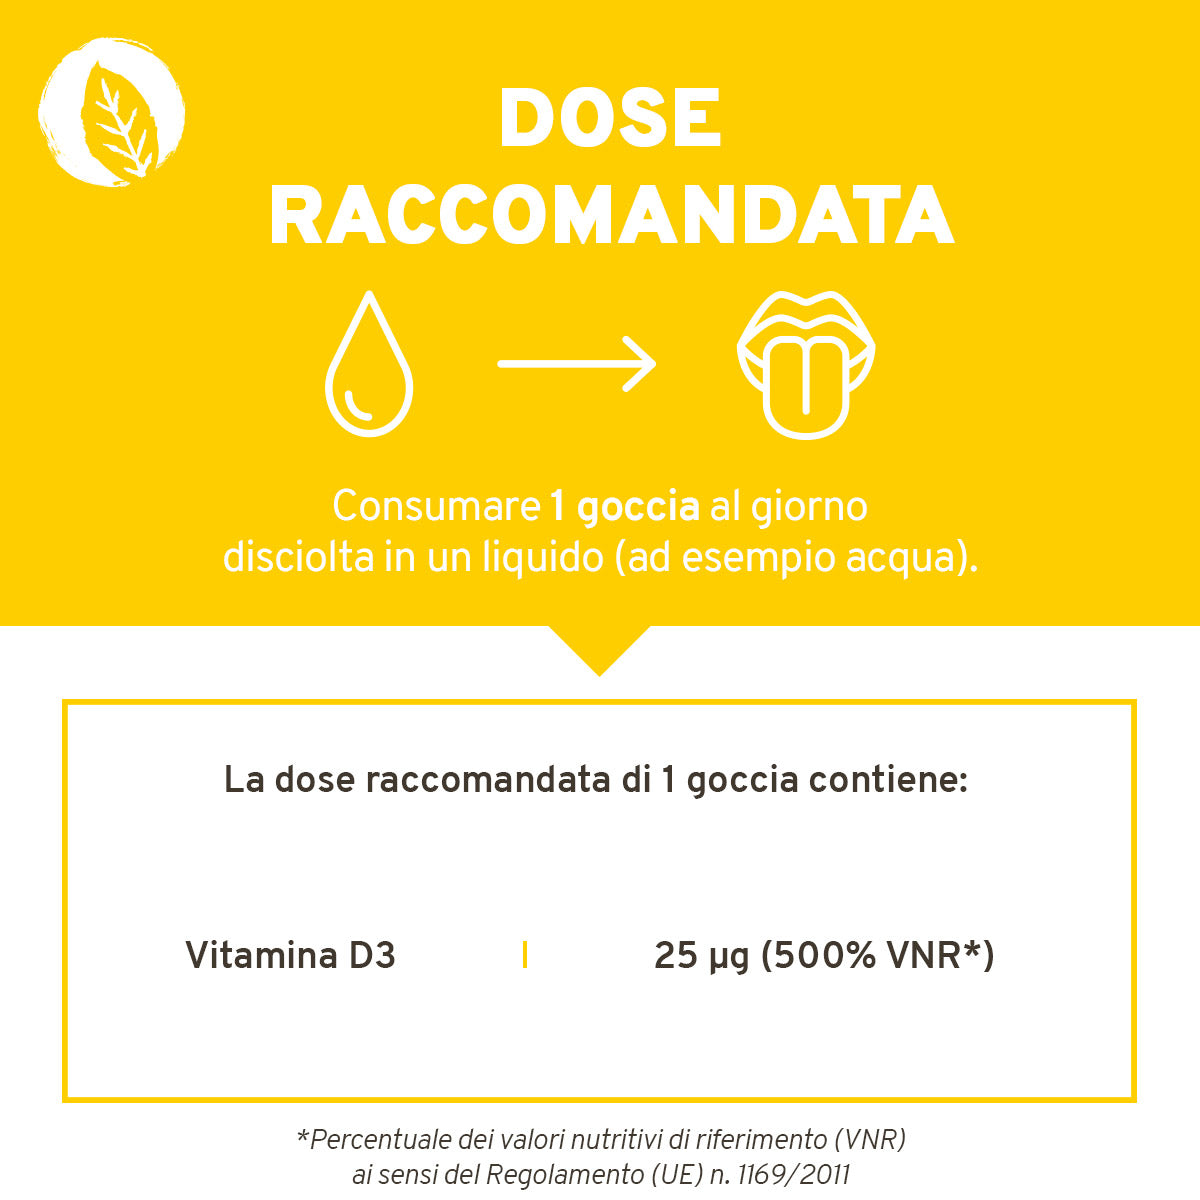 Vitamina del sole: Vitamina D3, in gocce